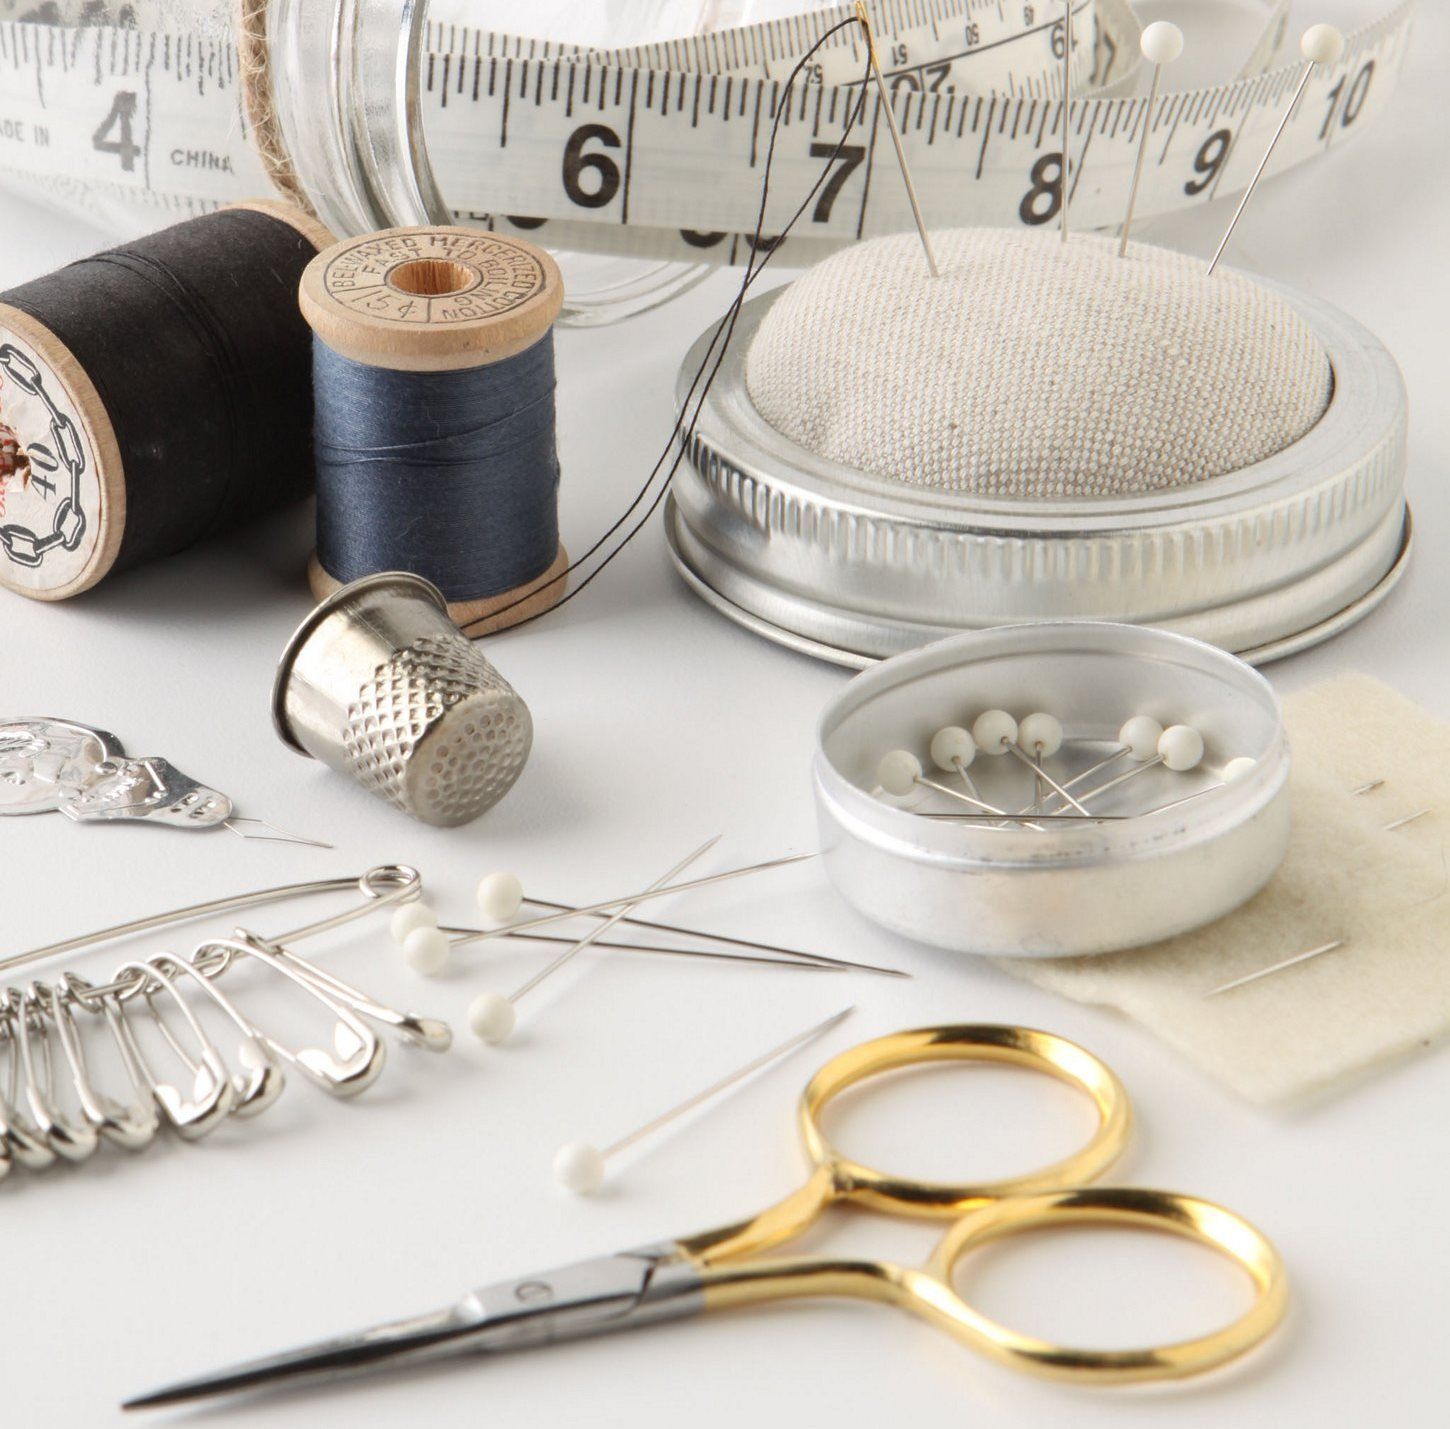 mason-jar-sewing-kit-materials.jpg